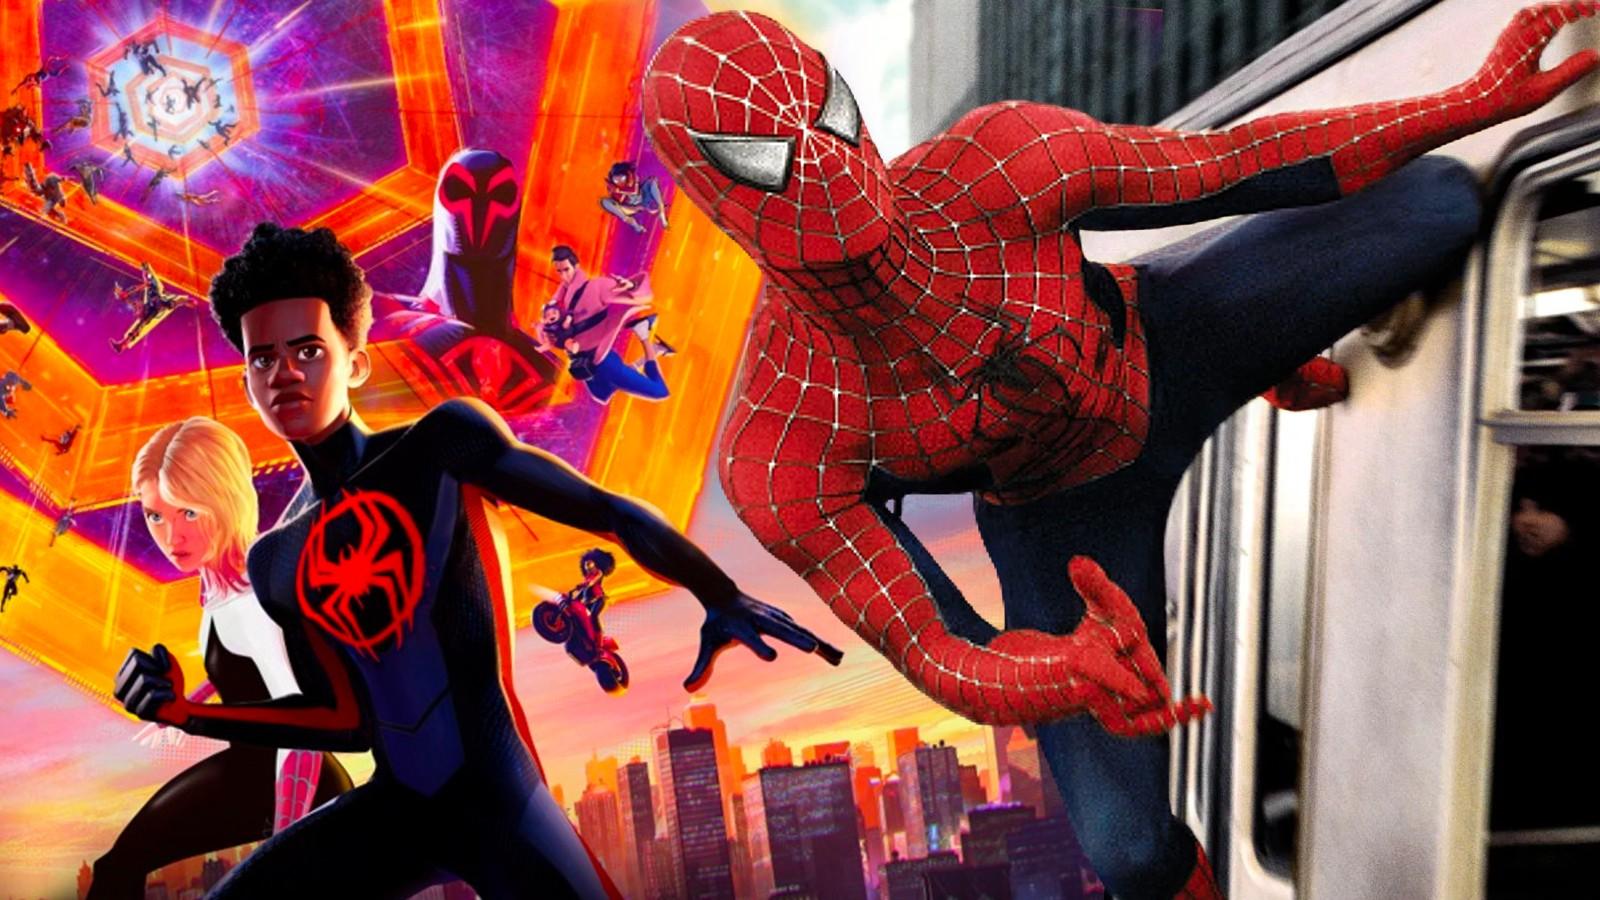 Stills from Spider-Man: Into the Spider-Verse and Spider-Man 2